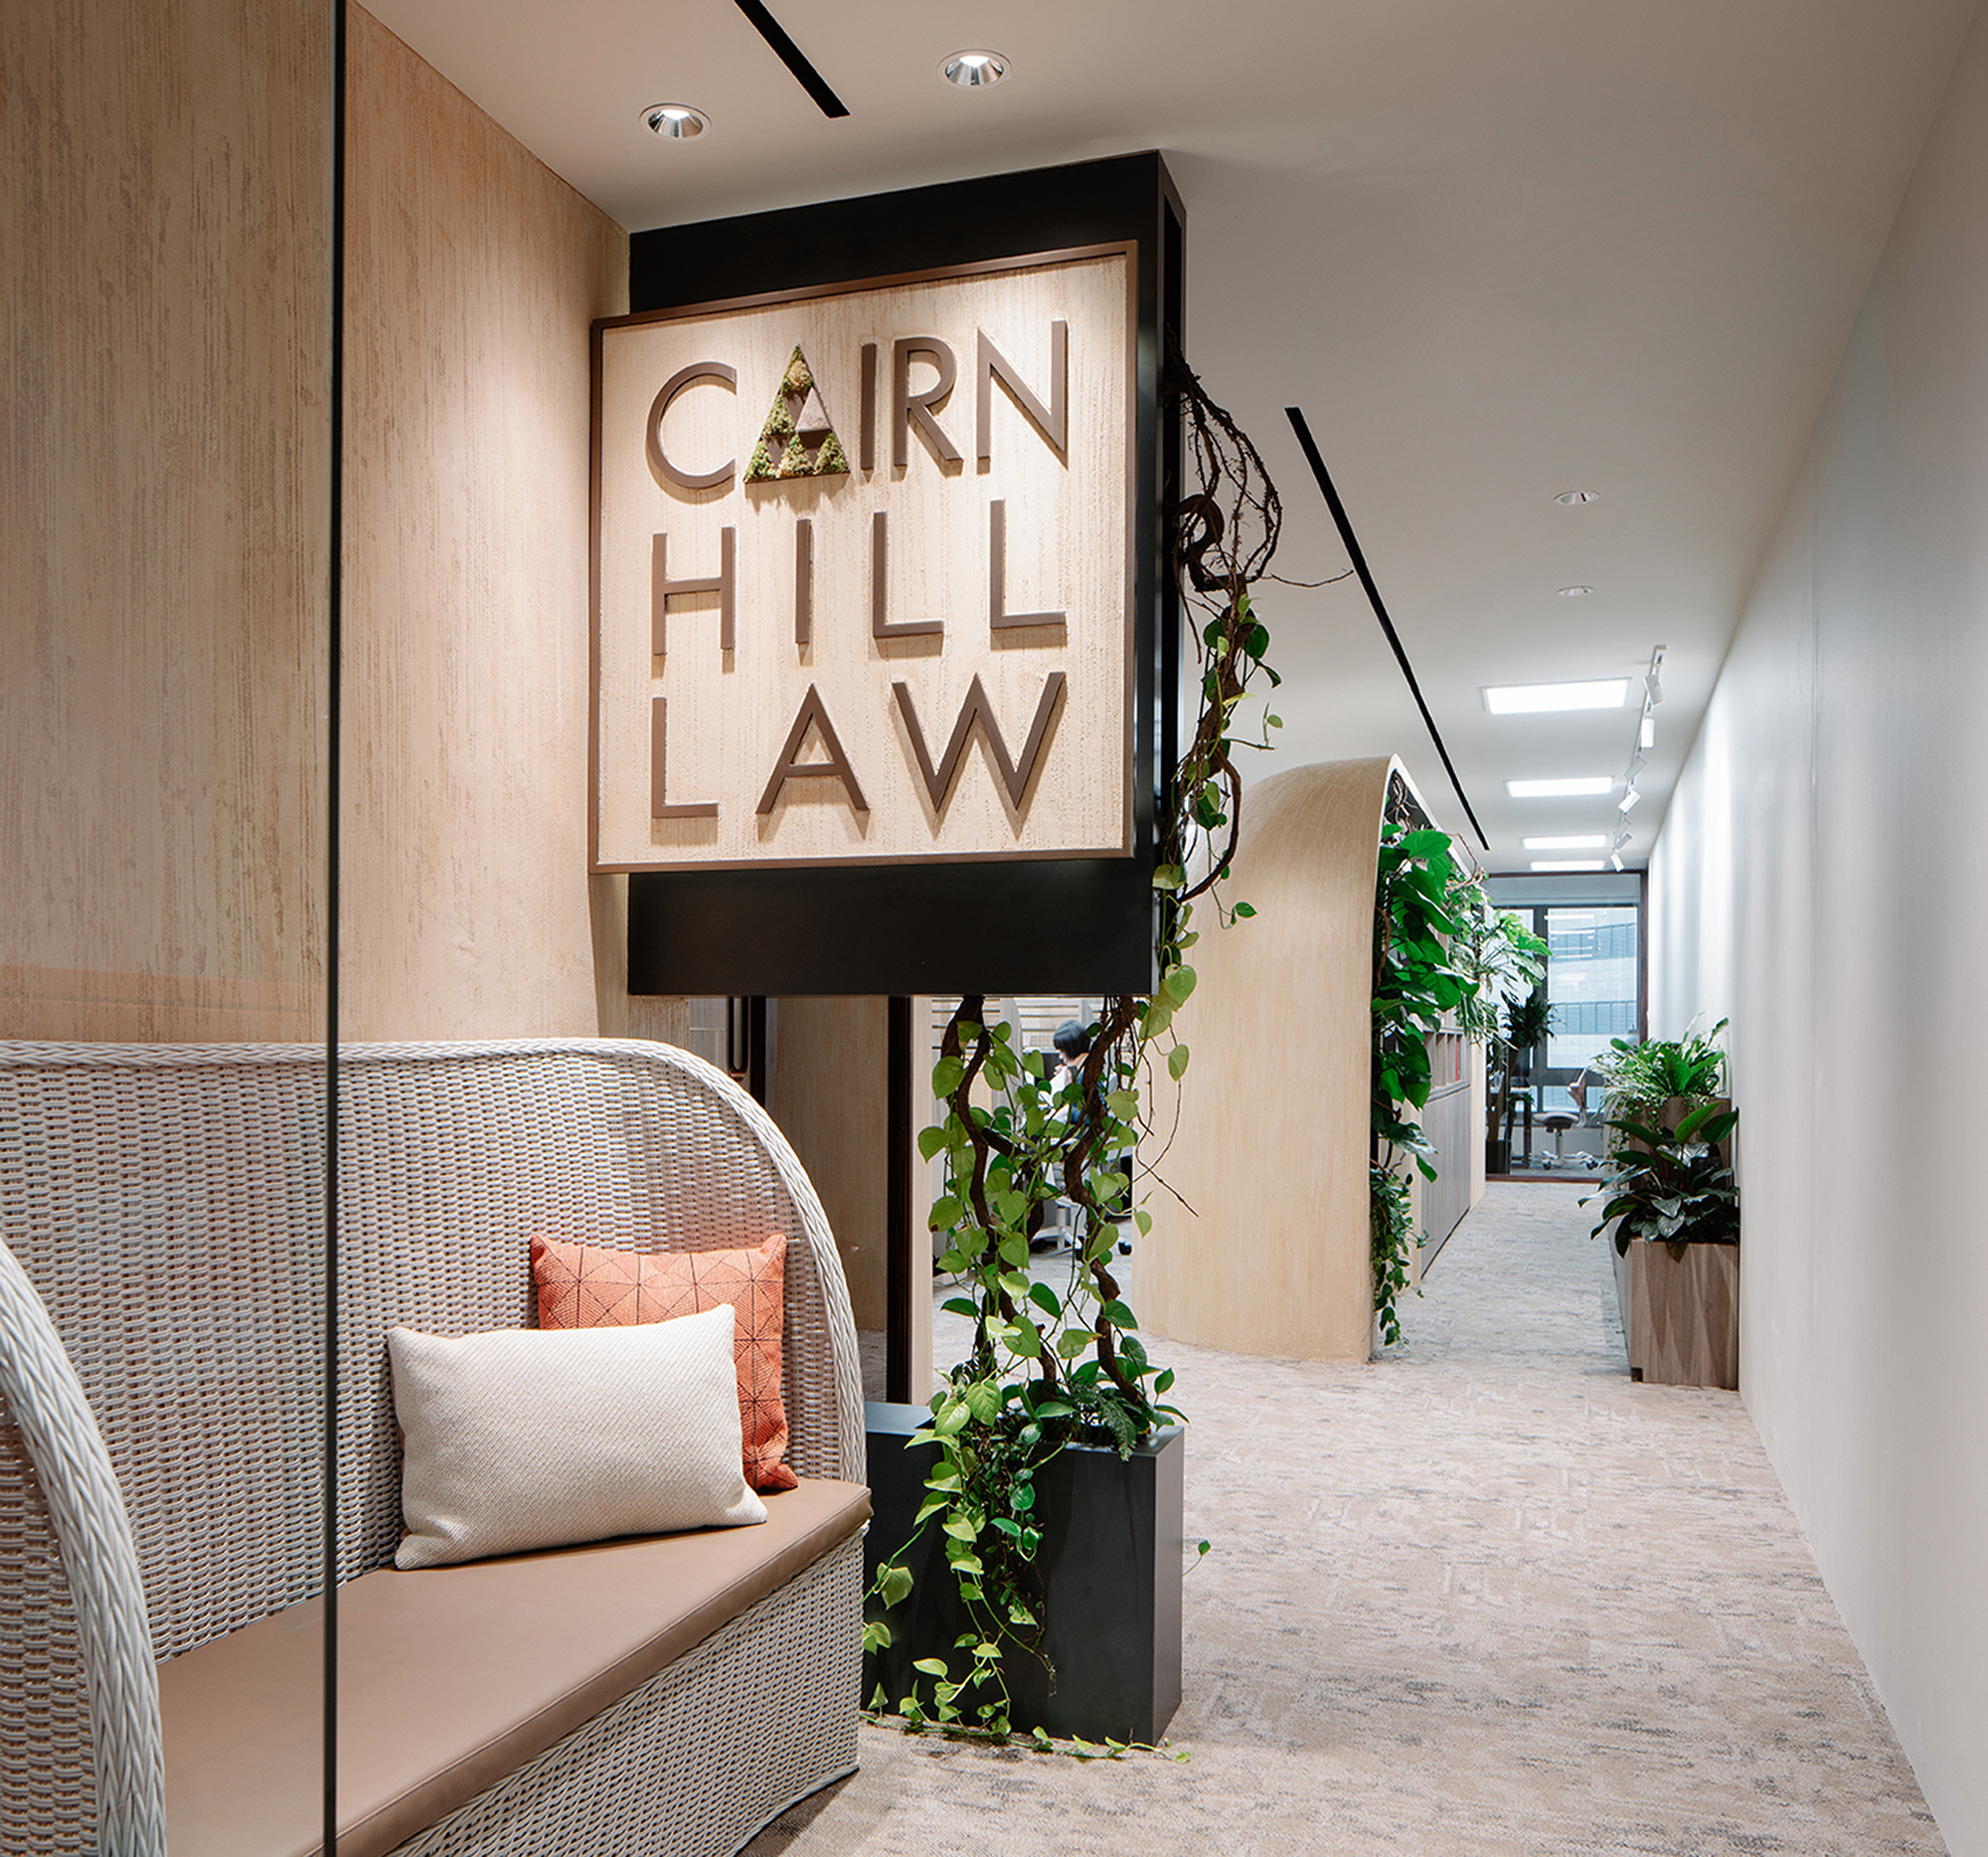 Cairnhill律师事务所-新加坡|ART-Arrakis | 建筑室内设计的创新与灵感